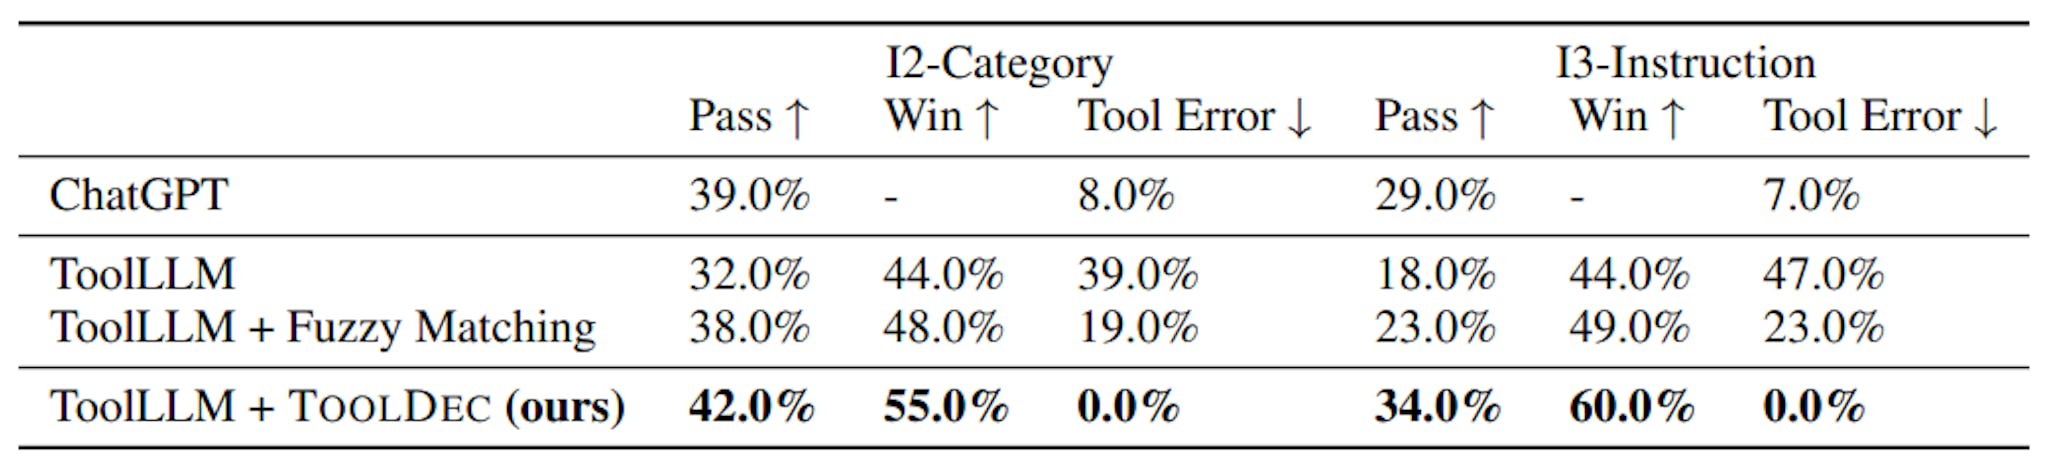 Bảng 3: Kết quả trên ToolEval. ToolLLM được cải tiến bởi TOOLDEC hoạt động tốt hơn ToolLLM cơ sở ở tất cả các số liệu. TOOLDEC đã loại bỏ tất cả các lỗi của công cụ và thậm chí còn có thể đánh bại ChatGPT một chút.